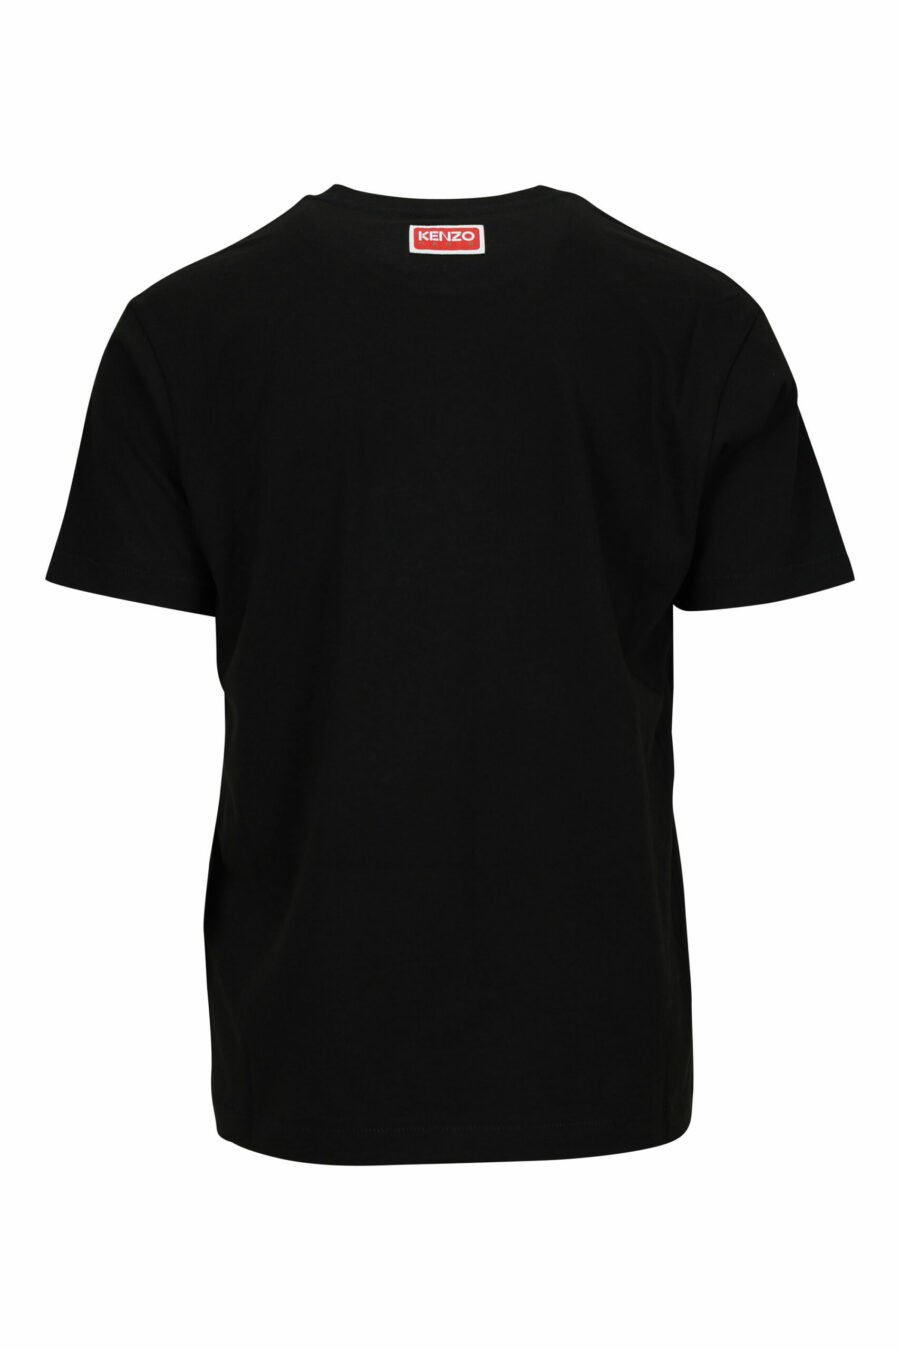 Schwarzes T-Shirt in Übergröße mit großem, geprägtem Tiger-Logo - 3612230568068 1 skaliert